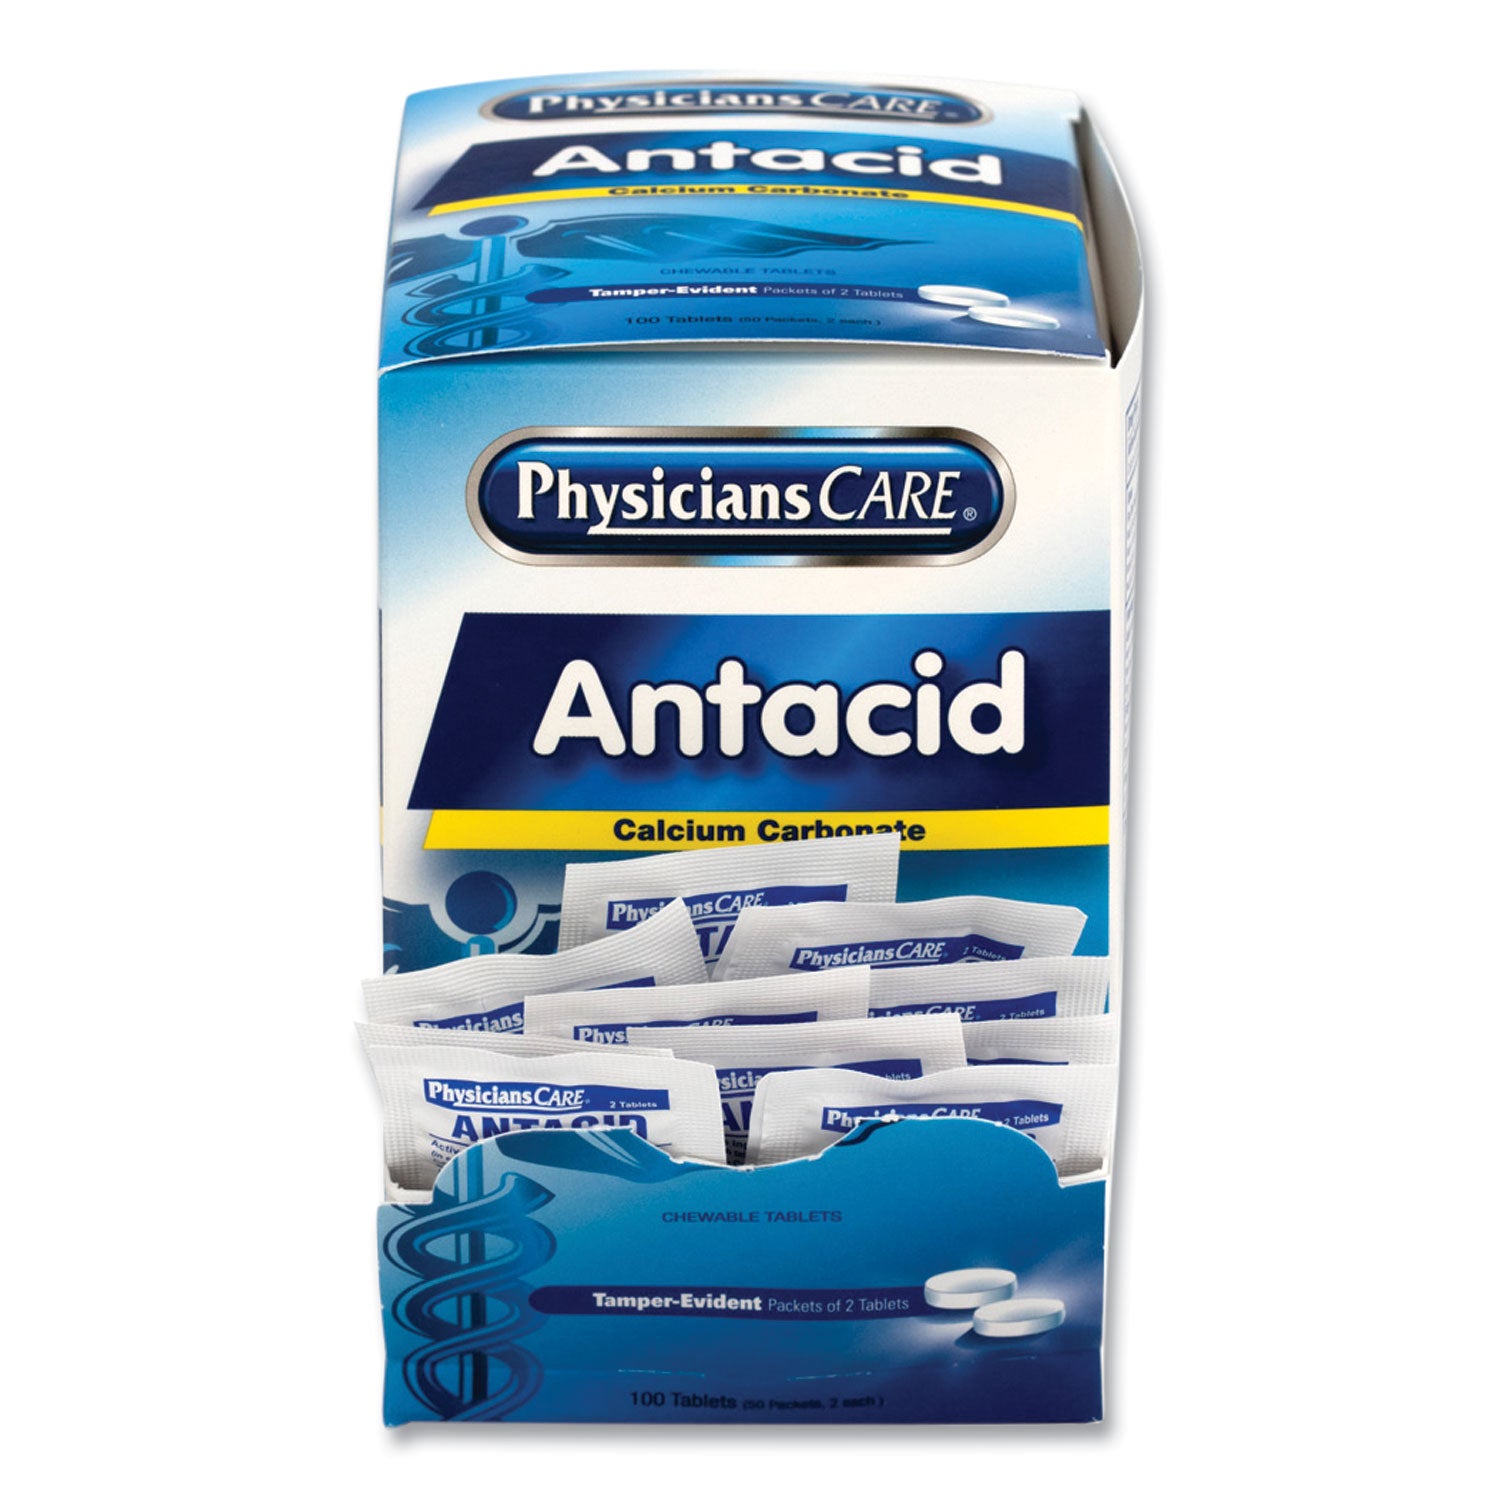 antacid-calcium-carbonate-medication-two-pack-50-packs-box_acm90089 - 3